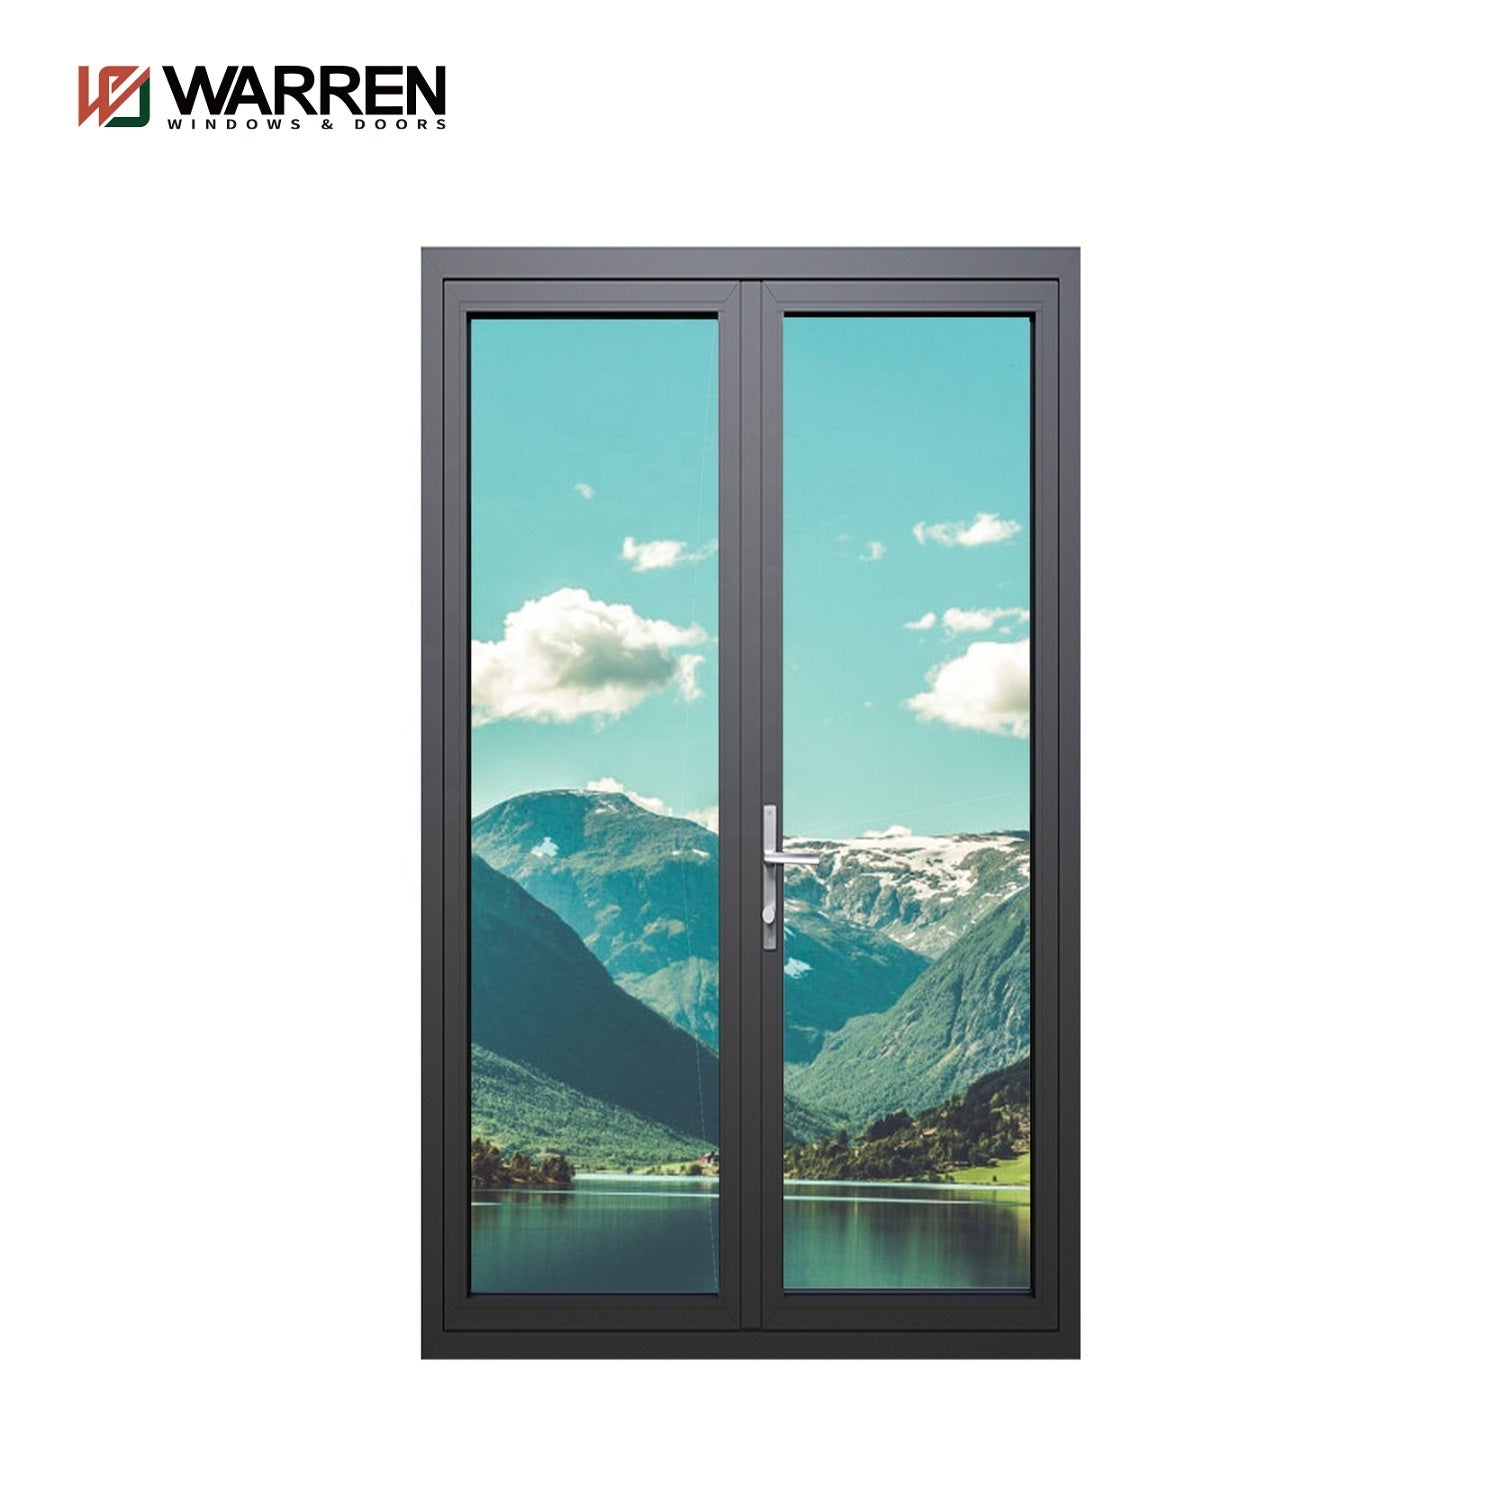 Warren 9 x 8 ft casement door triple glass double door German hardware